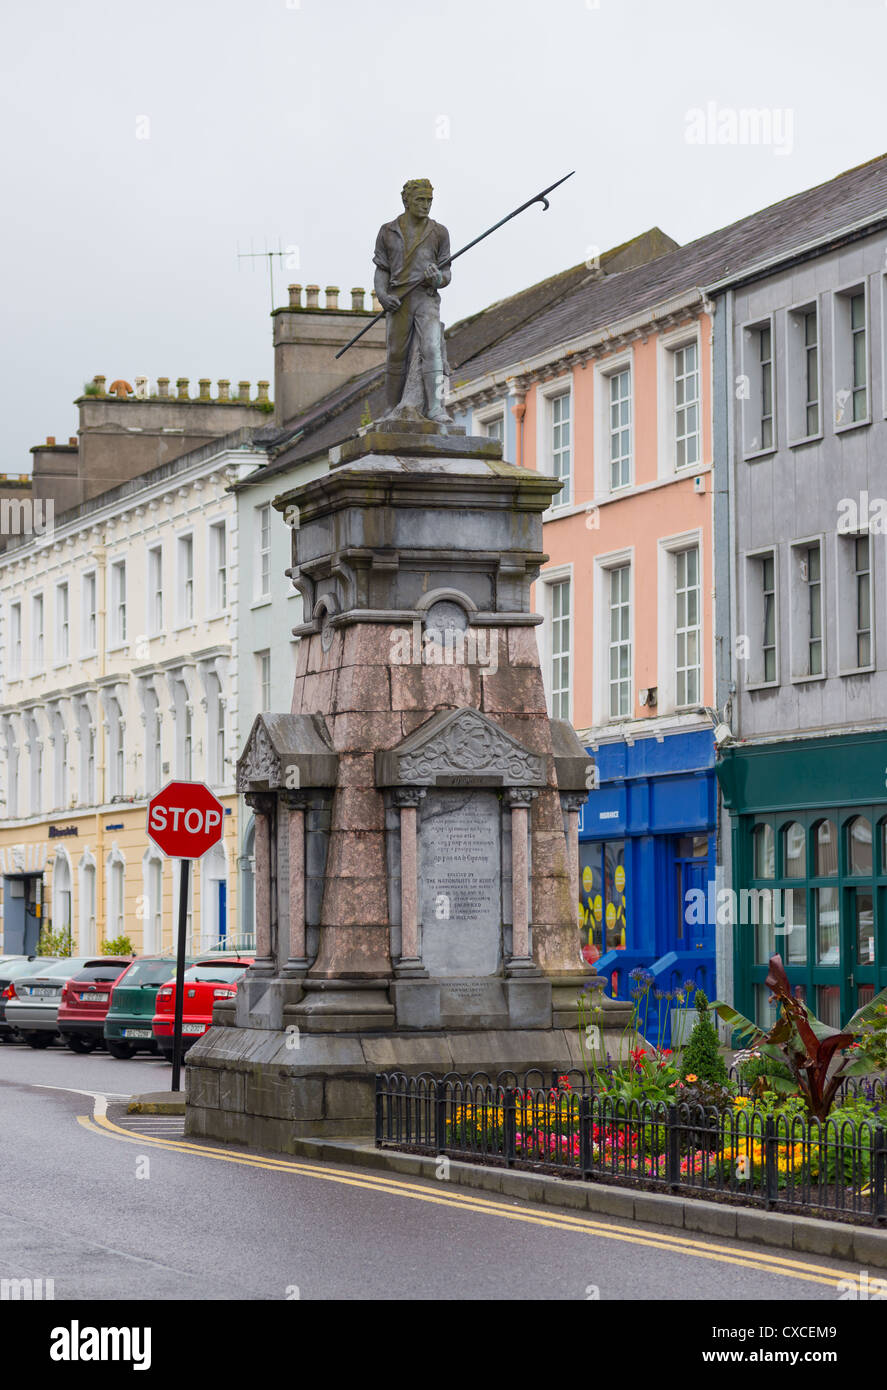 Le Comté de Kerry Irlande Tralee Denny Street Pouvoirs pikeman Albert Memorial se souvient des combattants de la liberté de la rébellion de 1798 Banque D'Images